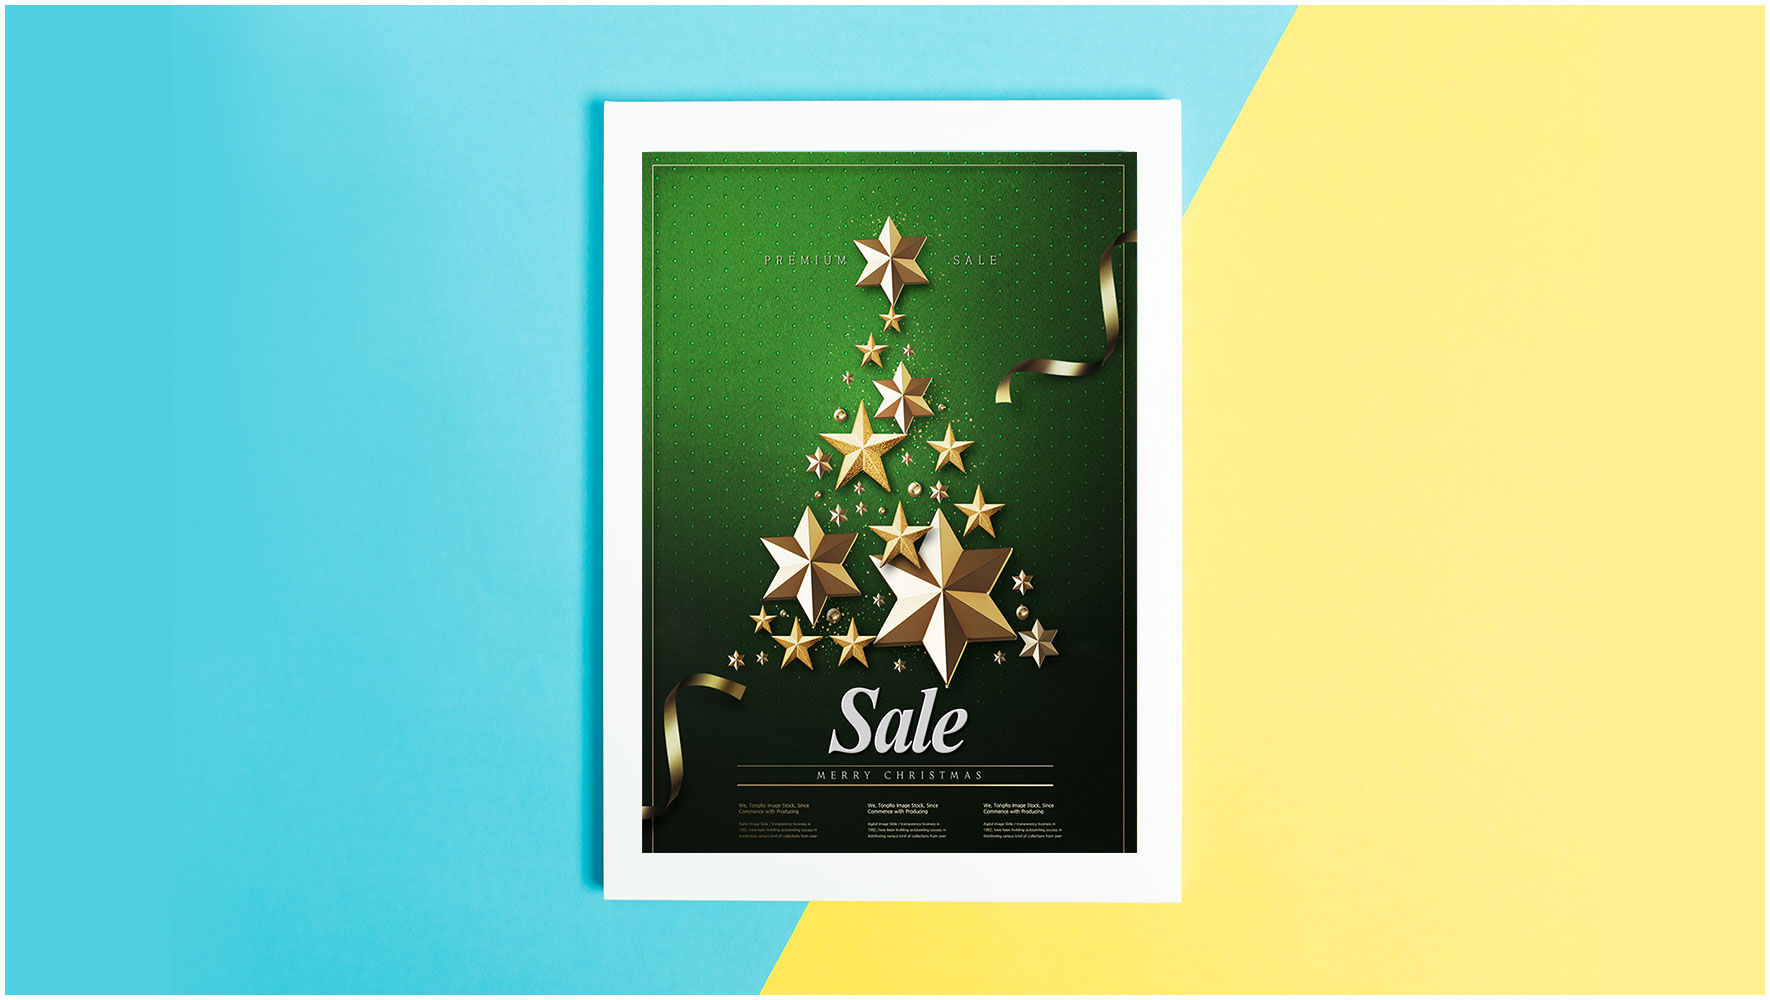 绿色创意星星堆叠效果PSD圣诞宣传海报